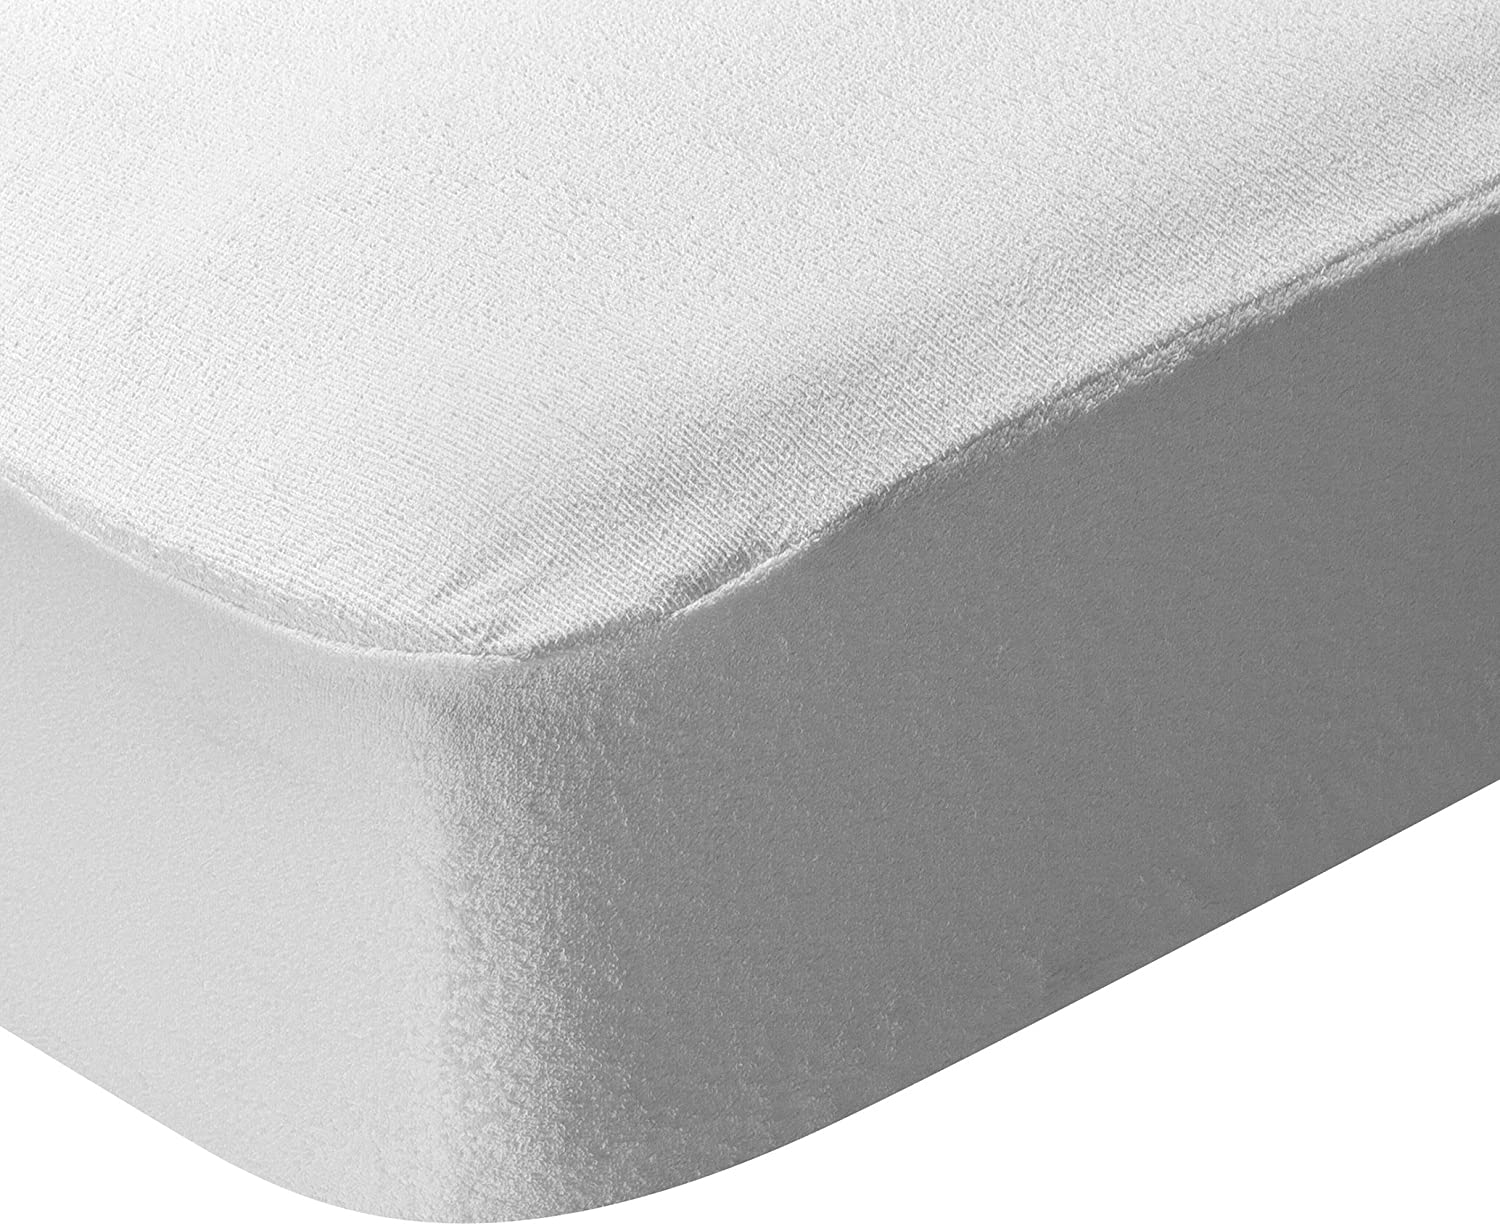 140 x 70 x 15 cm y 120 x 60 x 15 cm blanco blanco Talla:Cot Size-120x60x15cm Protector de colchón impermeable para cuna 